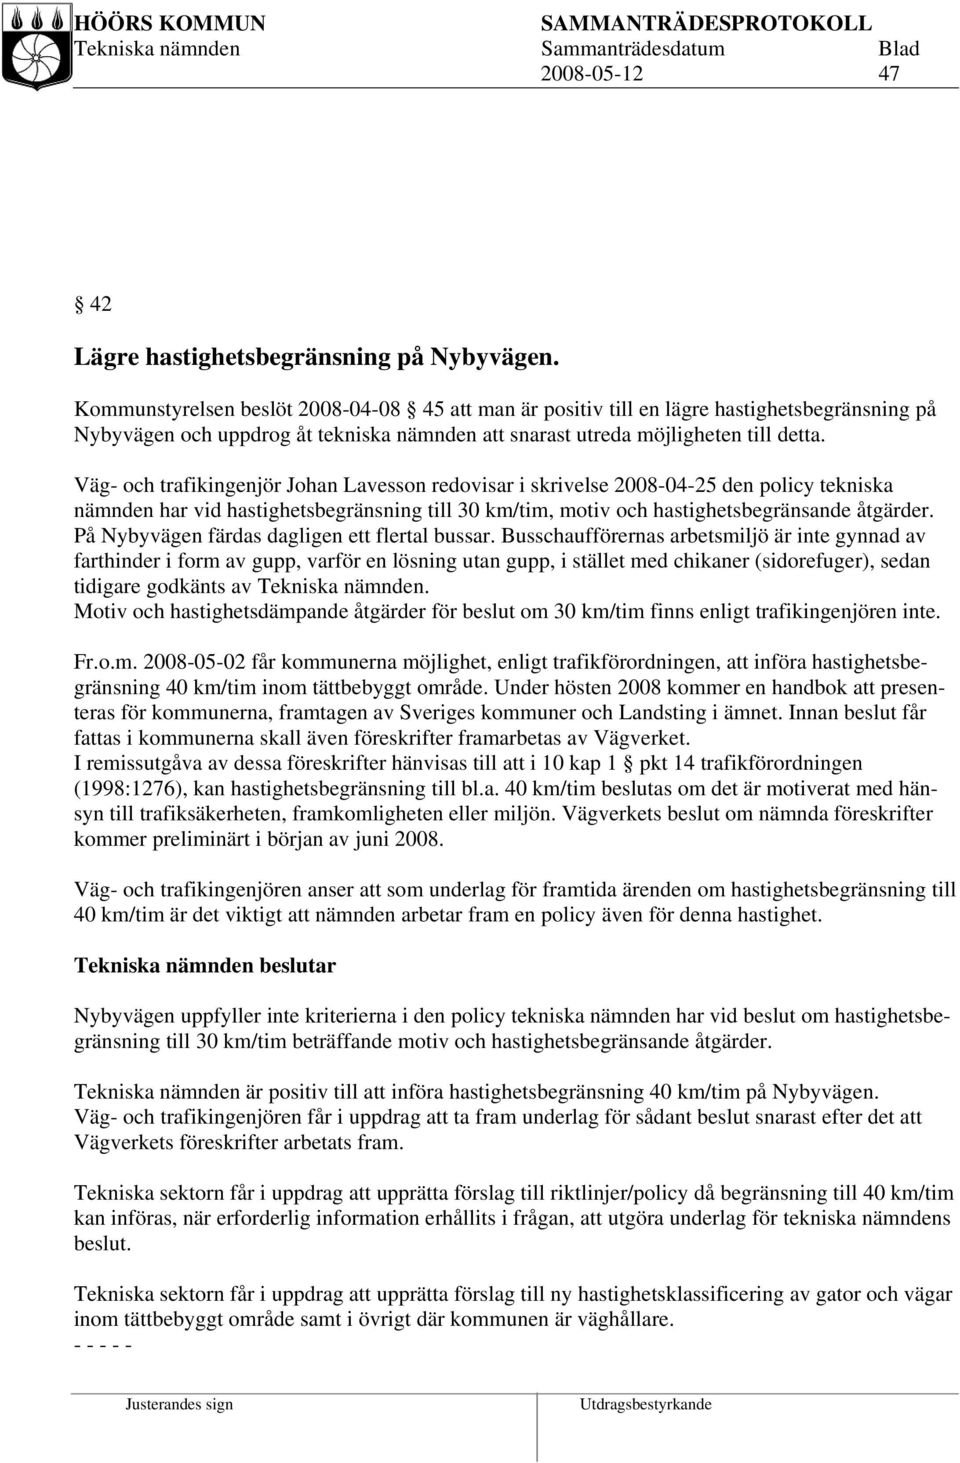 Väg- och trafikingenjör Johan Lavesson redovisar i skrivelse 2008-04-25 den policy tekniska nämnden har vid hastighetsbegränsning till 30 km/tim, motiv och hastighetsbegränsande åtgärder.